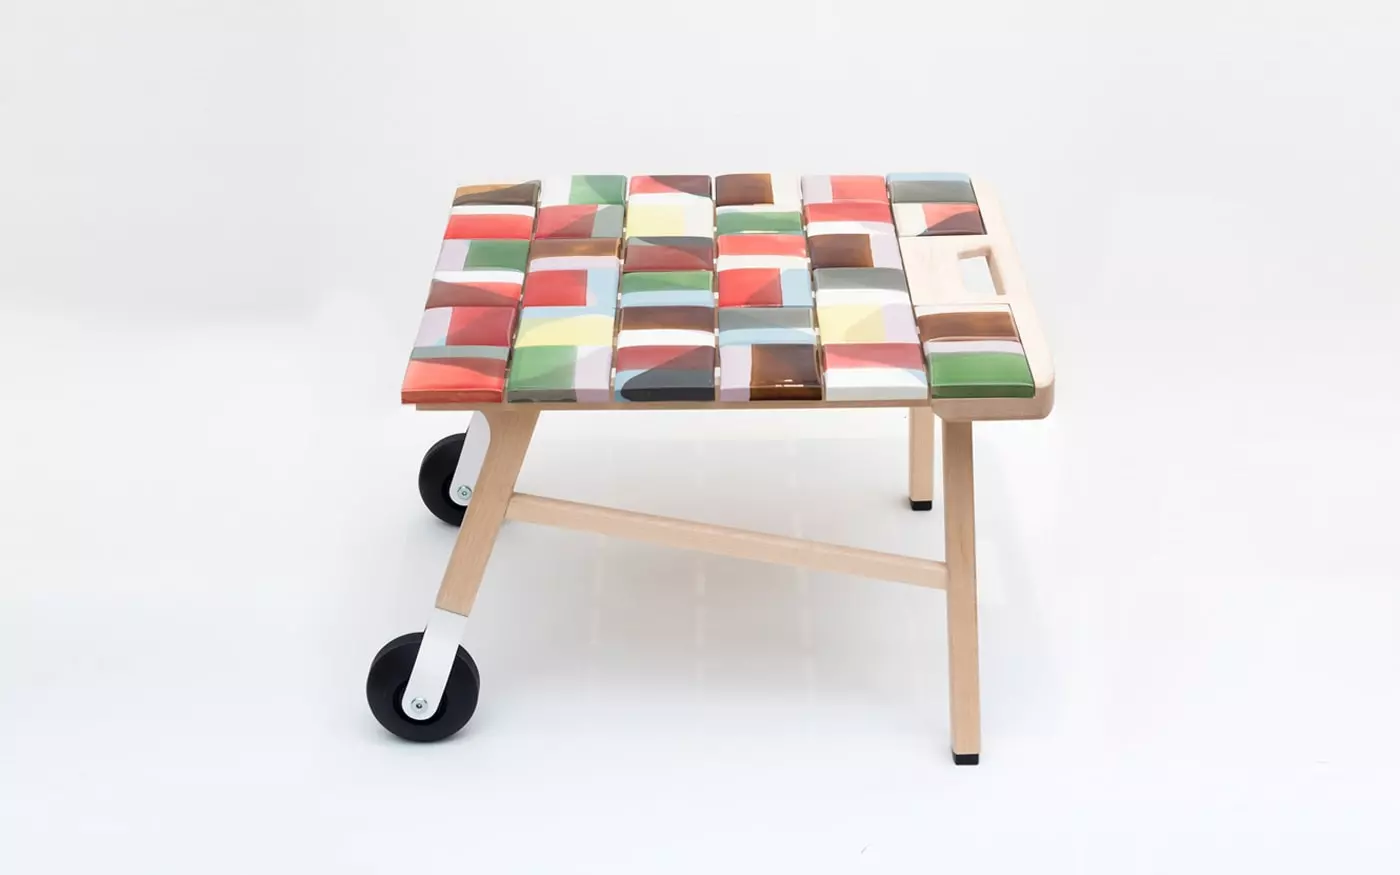 Tiles side table - Hella Jongerius - Coffee table - Galerie kreo